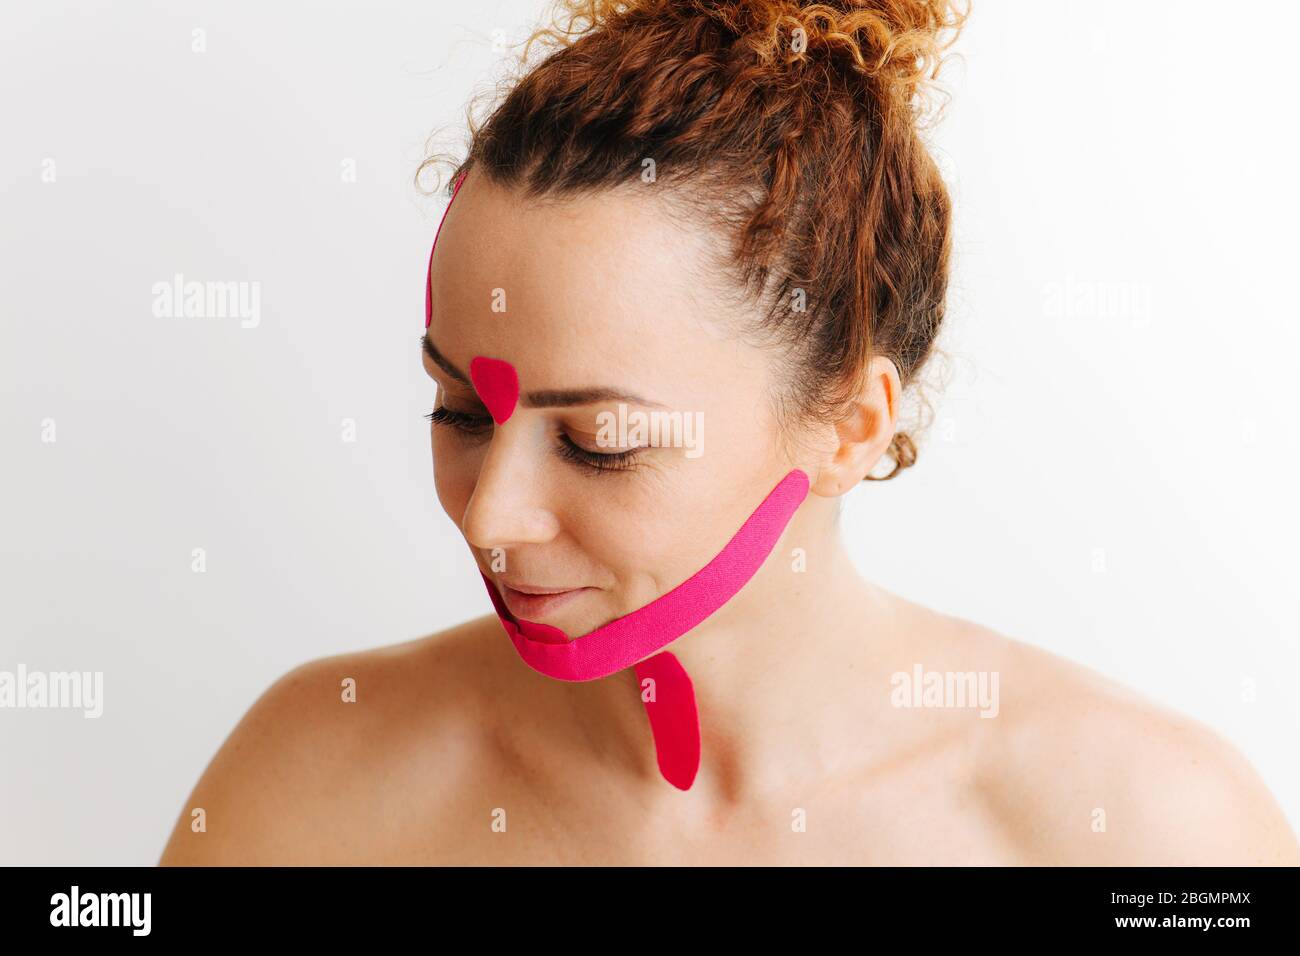 Amüsiert kichernd schüchterne Frau mit rosa Anti-Falten-Band auf ihrem Gesicht über weiß Stockfoto